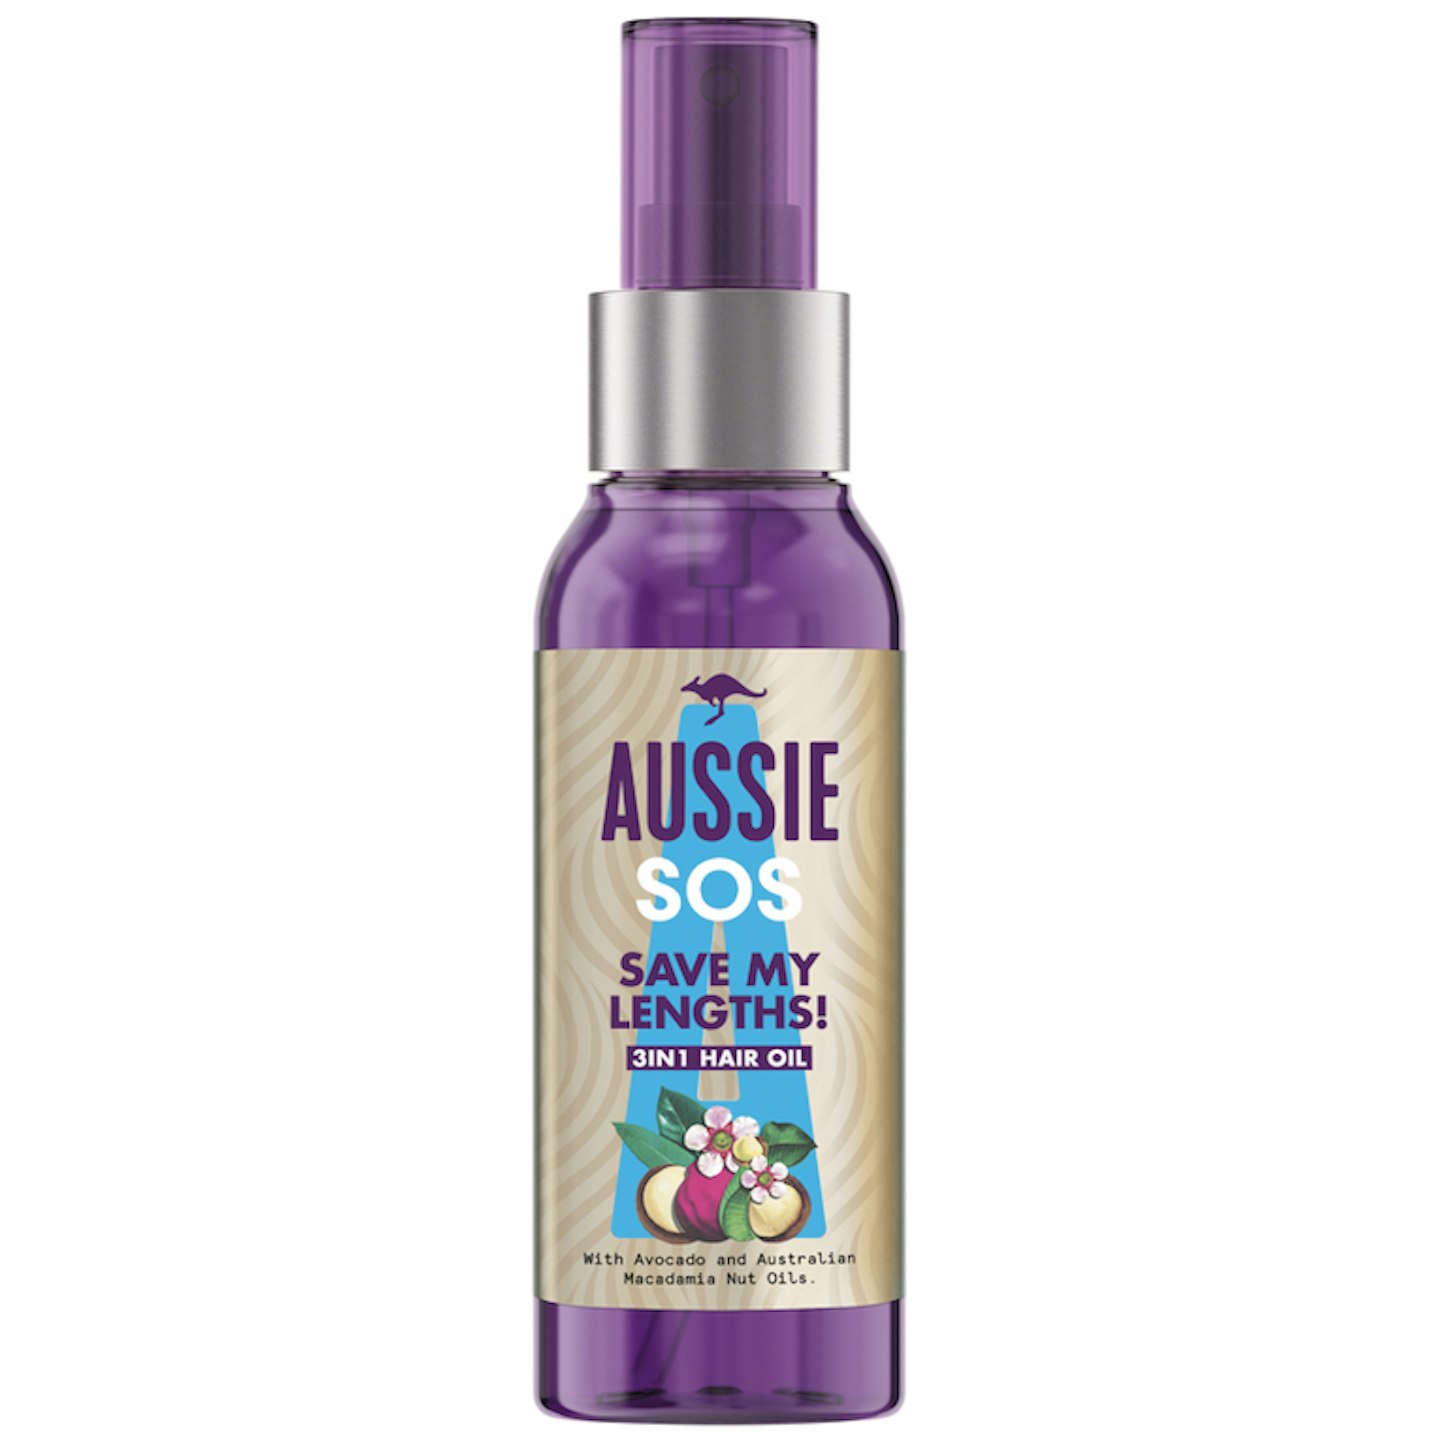 Aussie SOS Save My Lengths! 3 in 1 Hair Oil